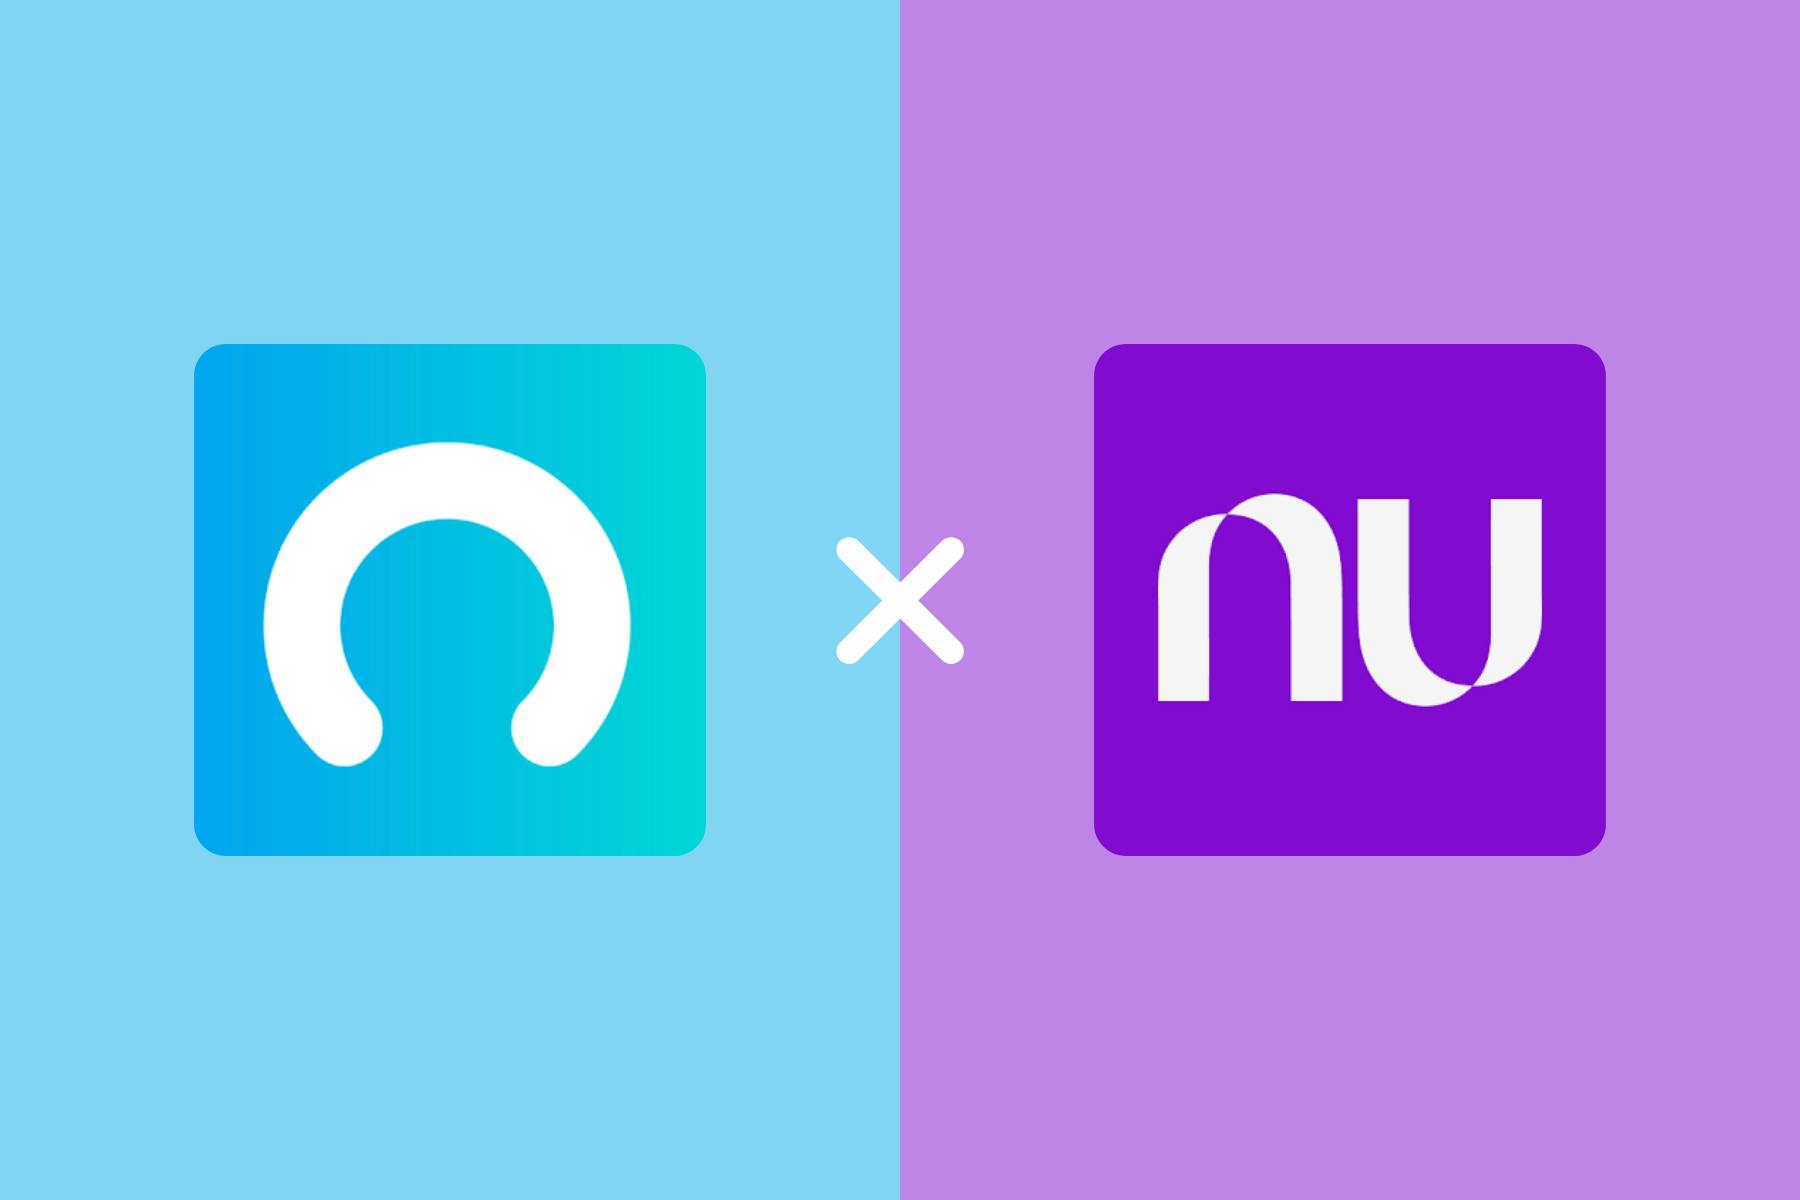 Nubank começa a testar pagamento de Spotify e Netflix no débito - Olhar  Digital